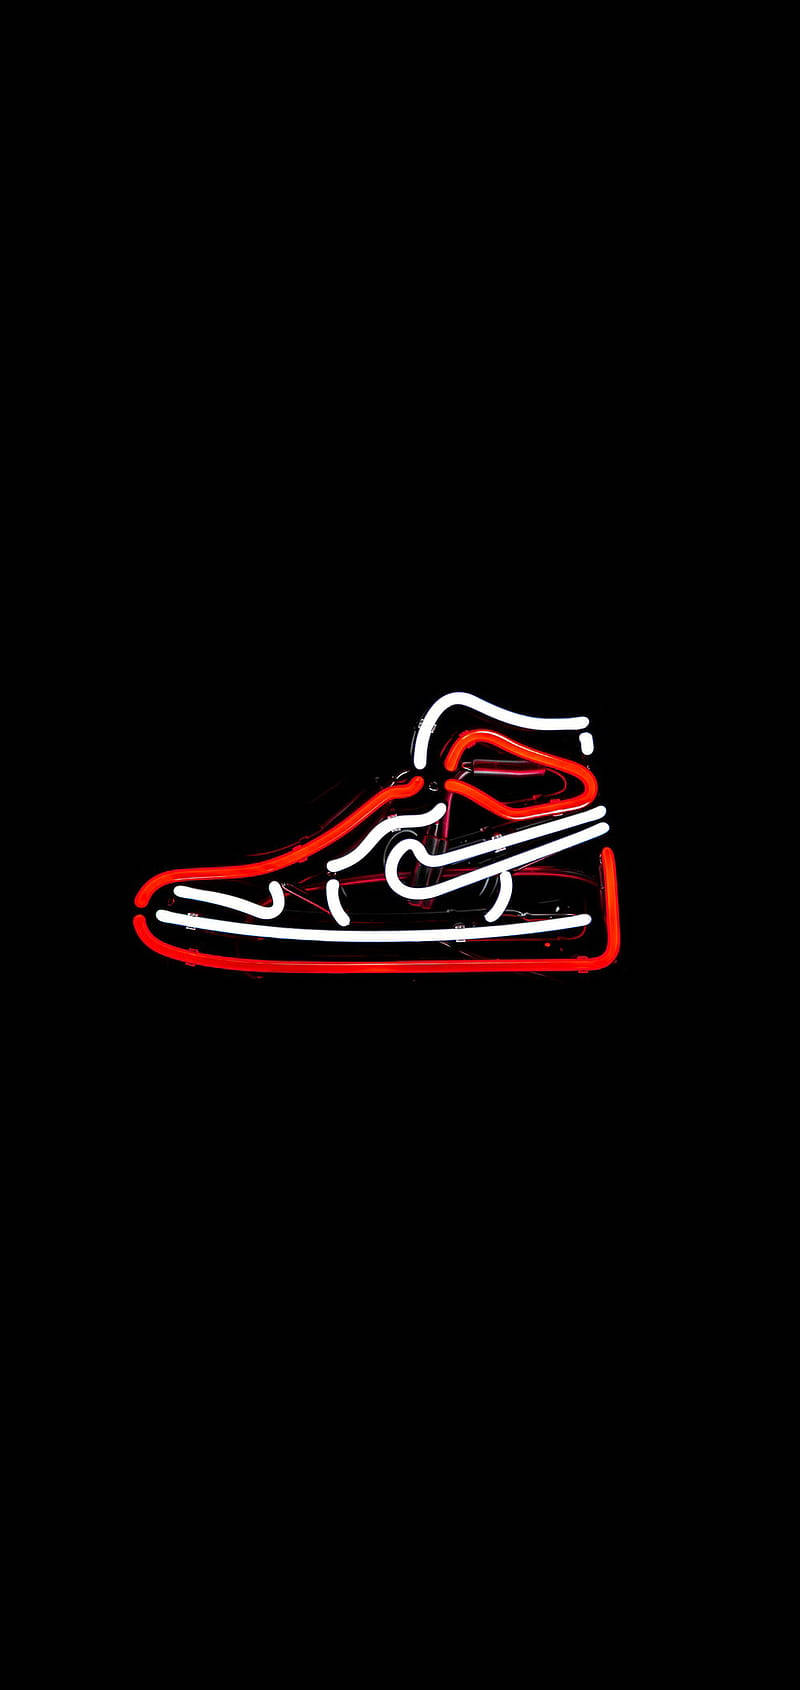 Neon Nike Air Jordan 1